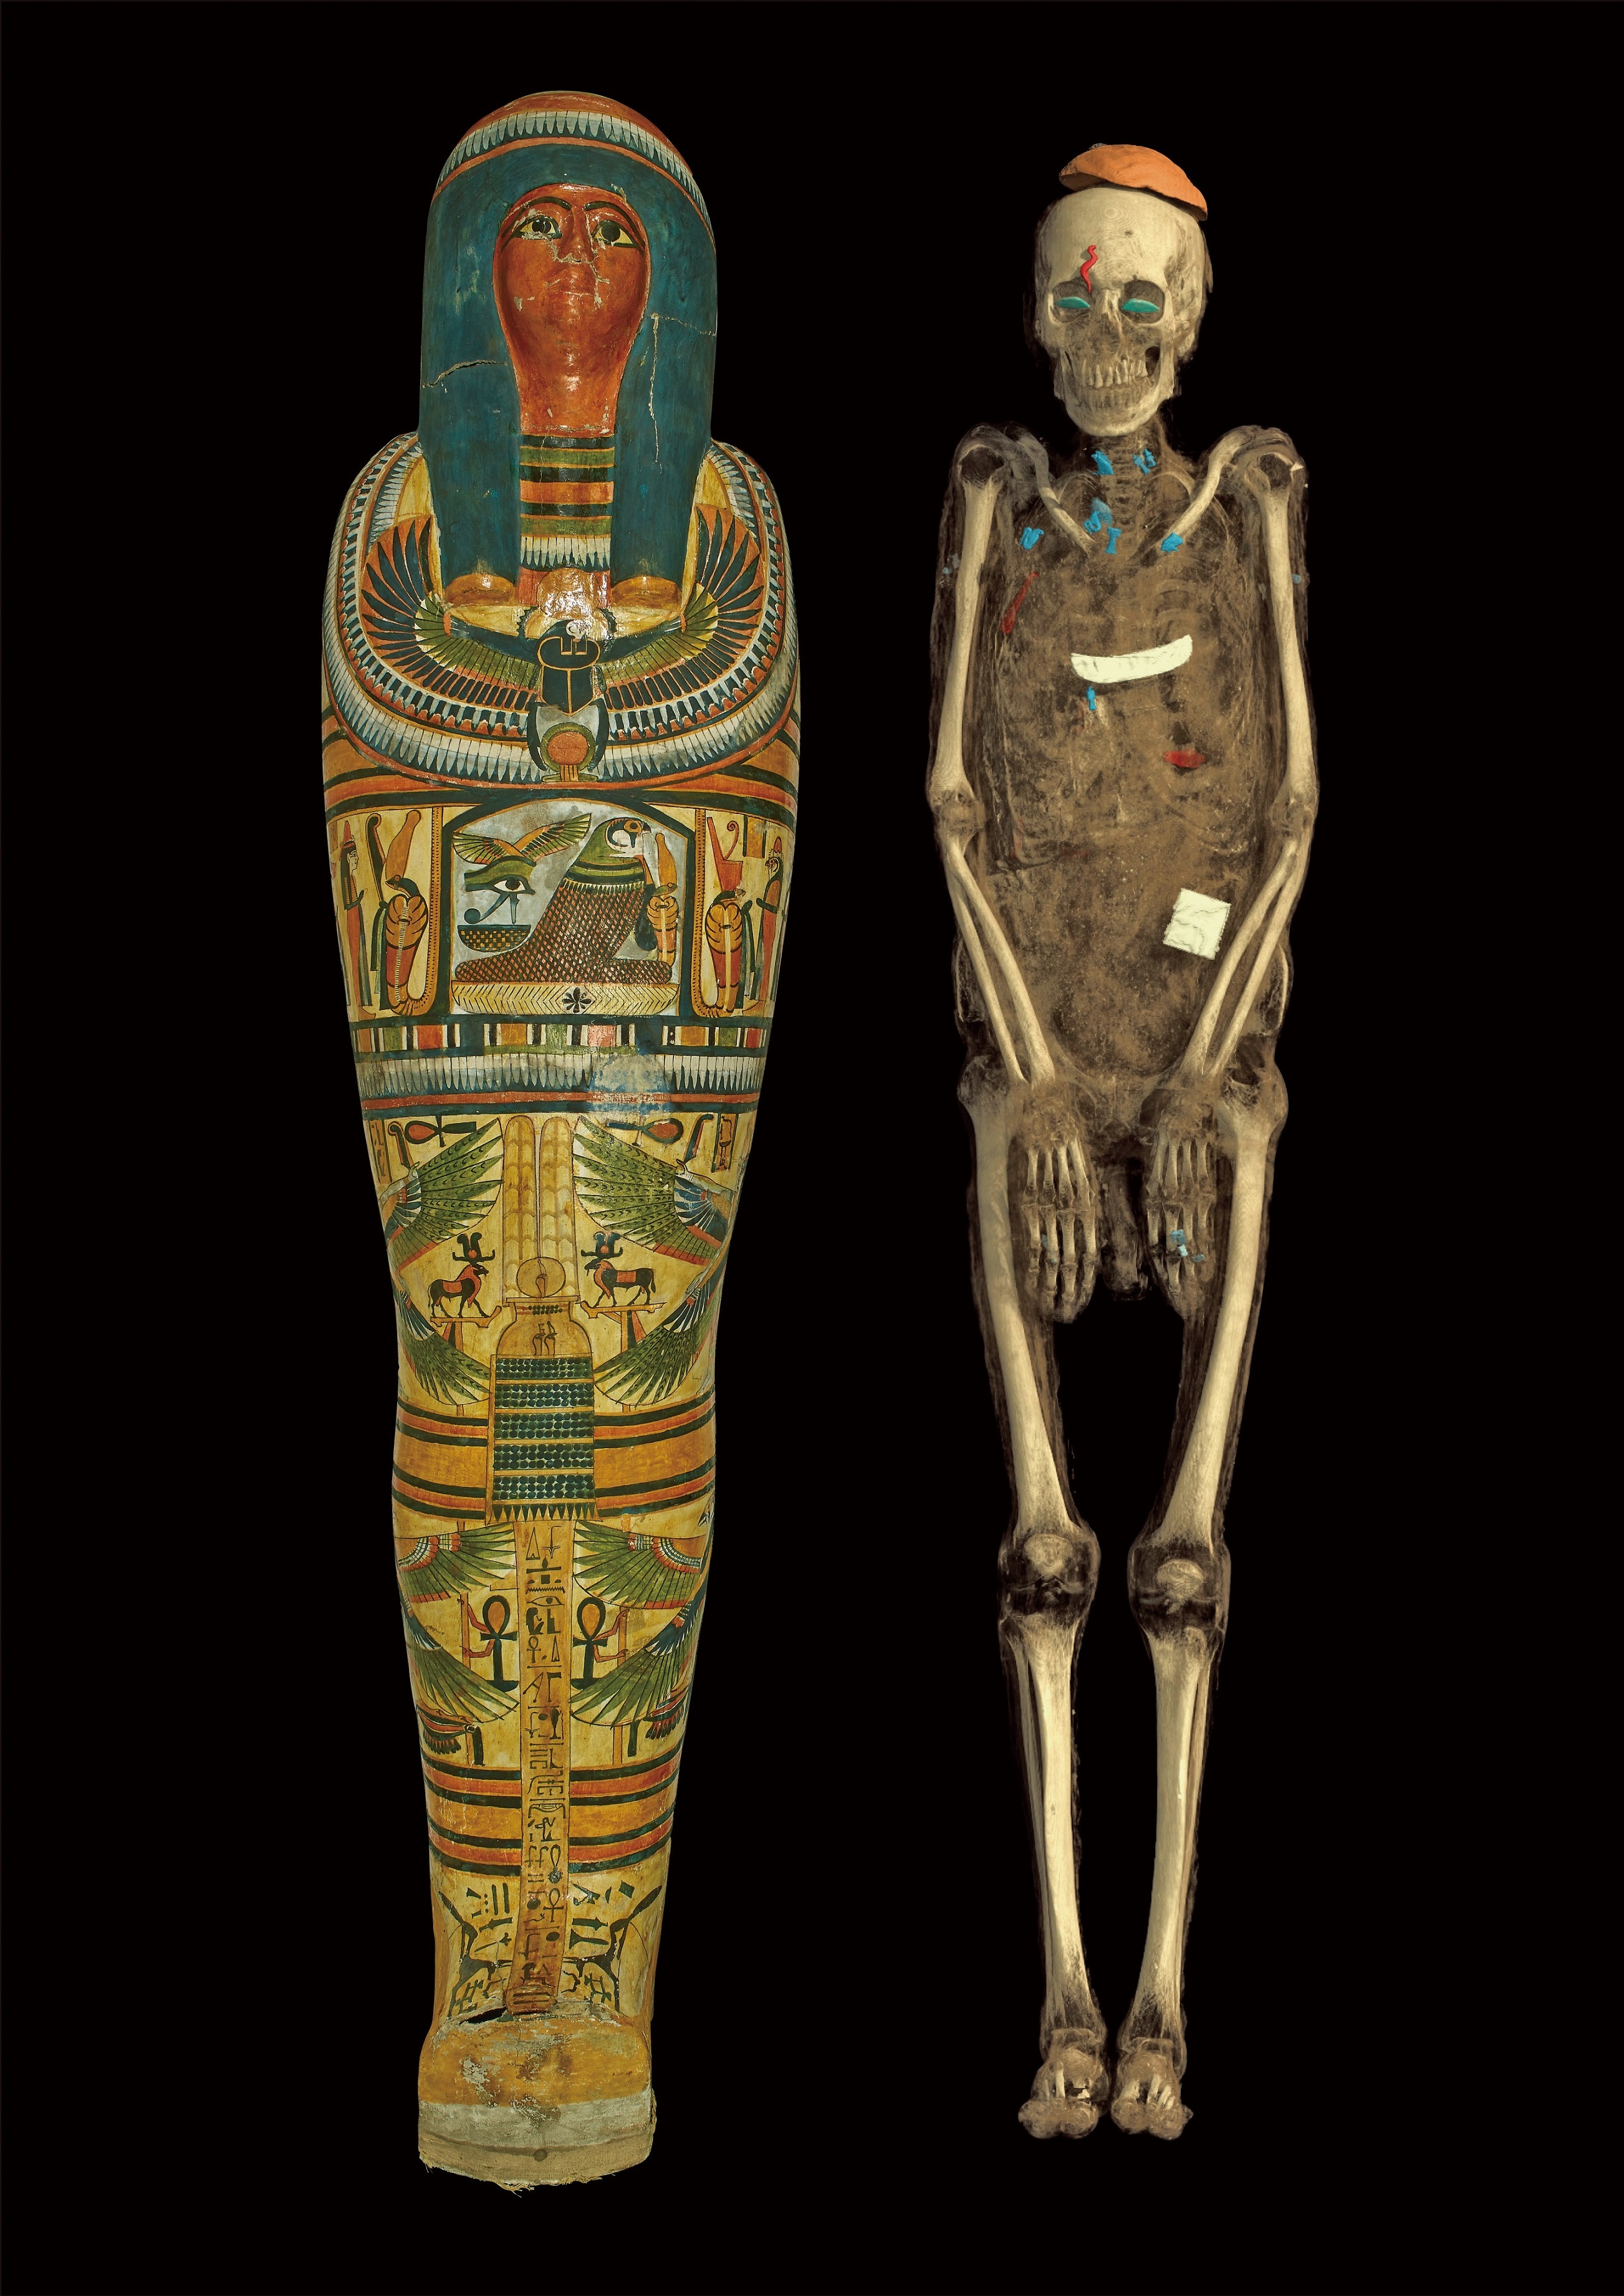 カルトナージュ棺に納められたネスペルエンネブウのミイラと、CT スキャン画像から作成した3次元構築画像　第3中間期・第22王朝 前800年頃 大英博物館  (c) The Trustees of the British Museum